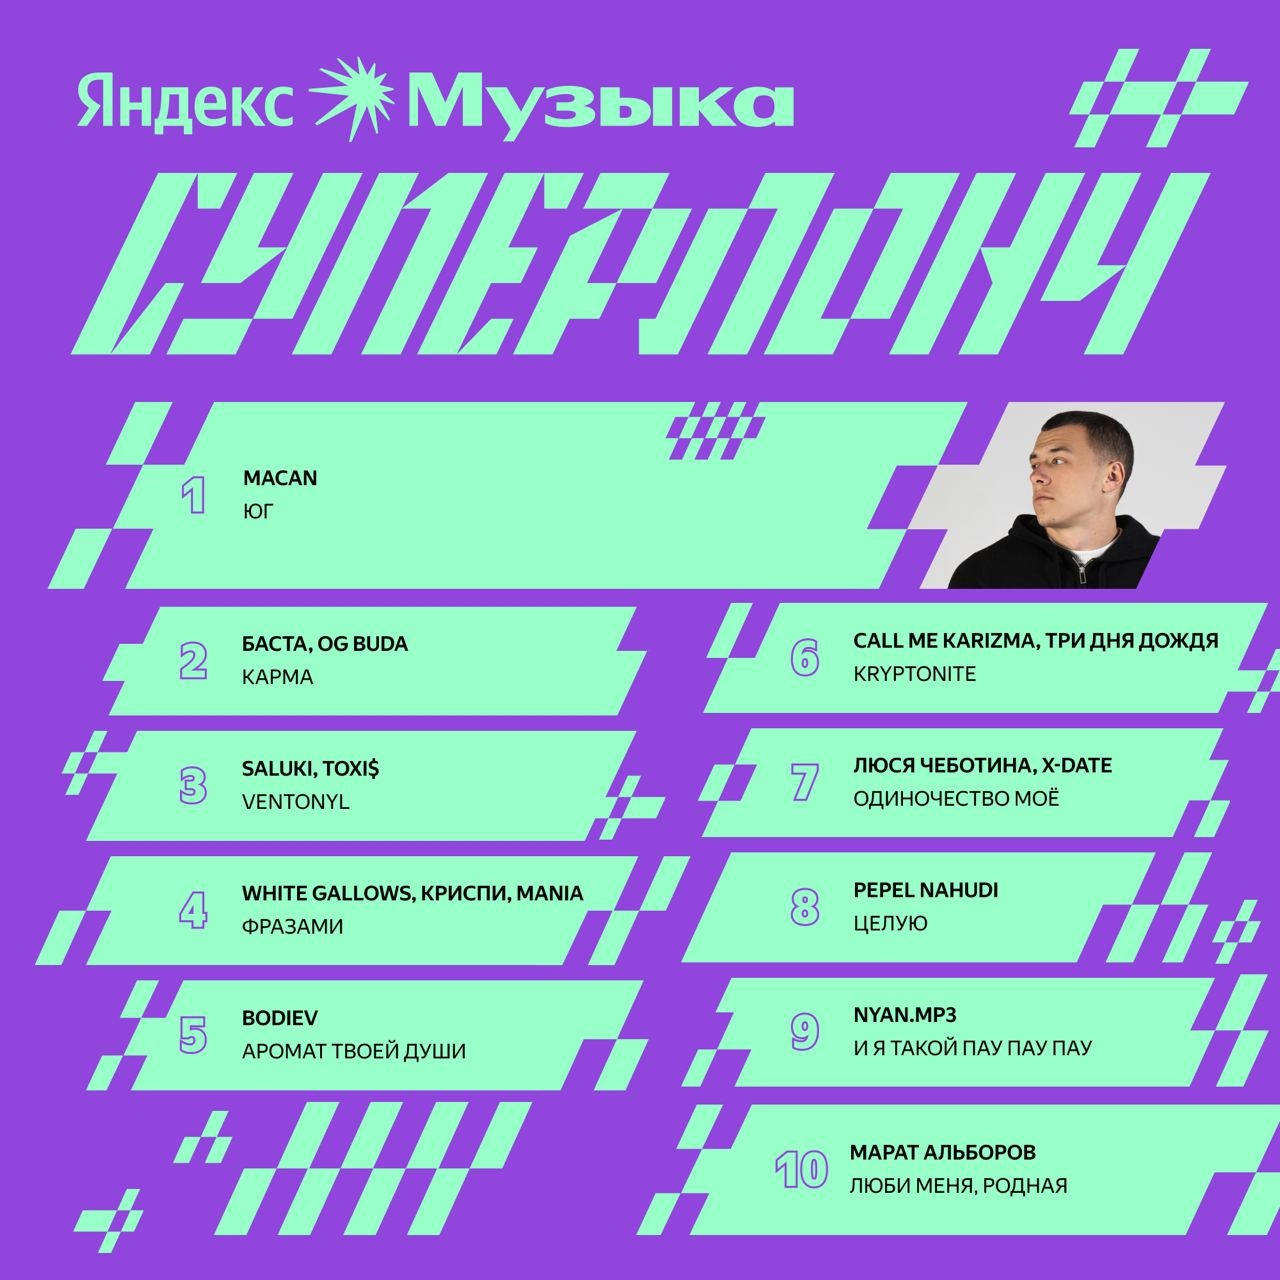 MACAN забирает финальный суперлонч 2023 на Яндекс Музыке.